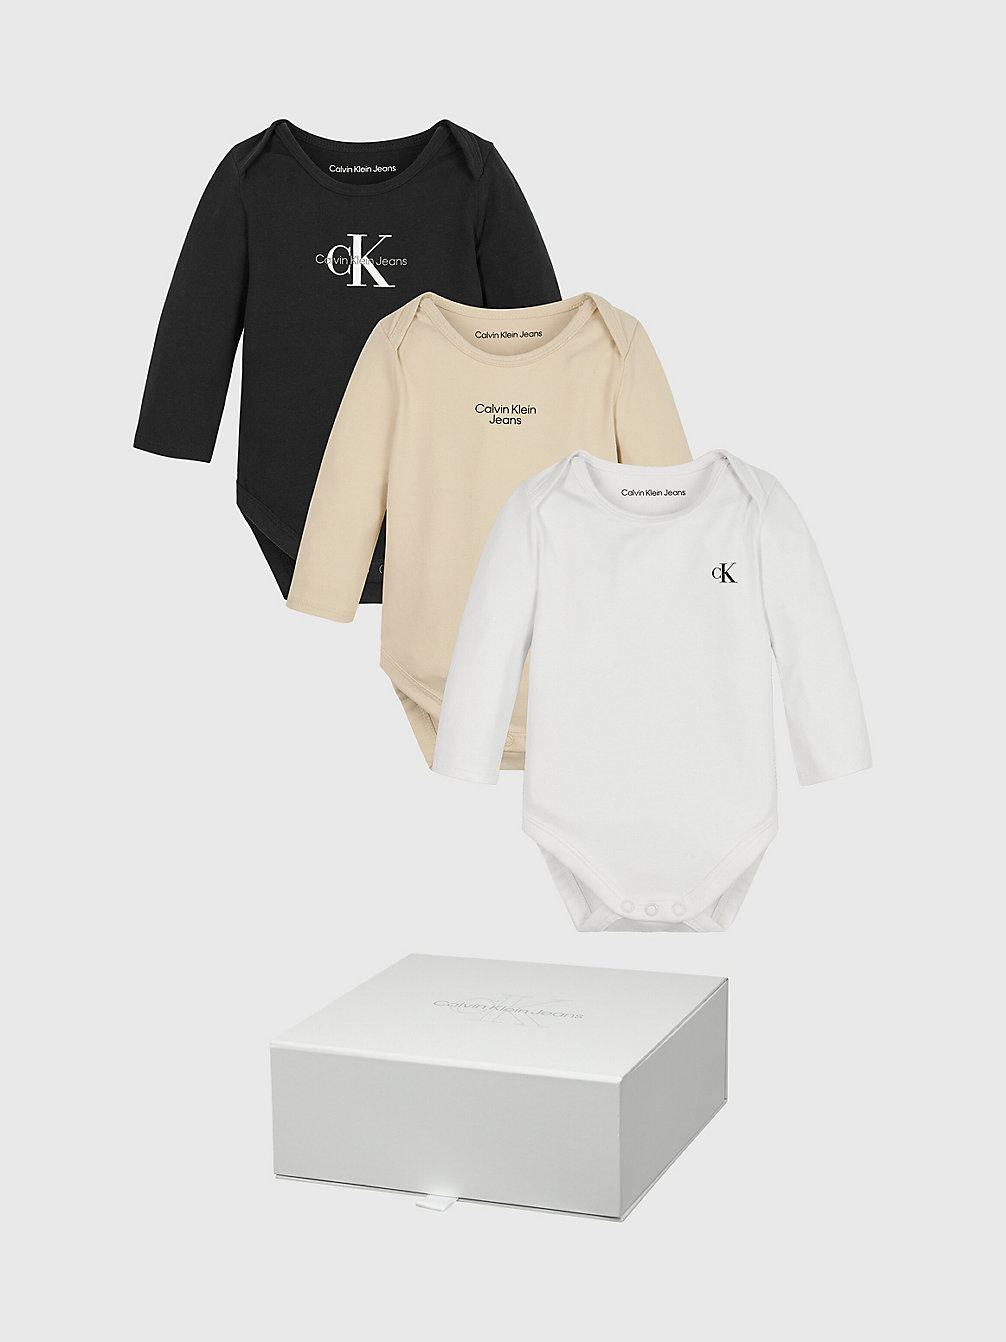 BLACK/MUSLIN/BRIGHT WHITE 3-Pack Newborn Bodysuit Giftset undefined newborn Calvin Klein